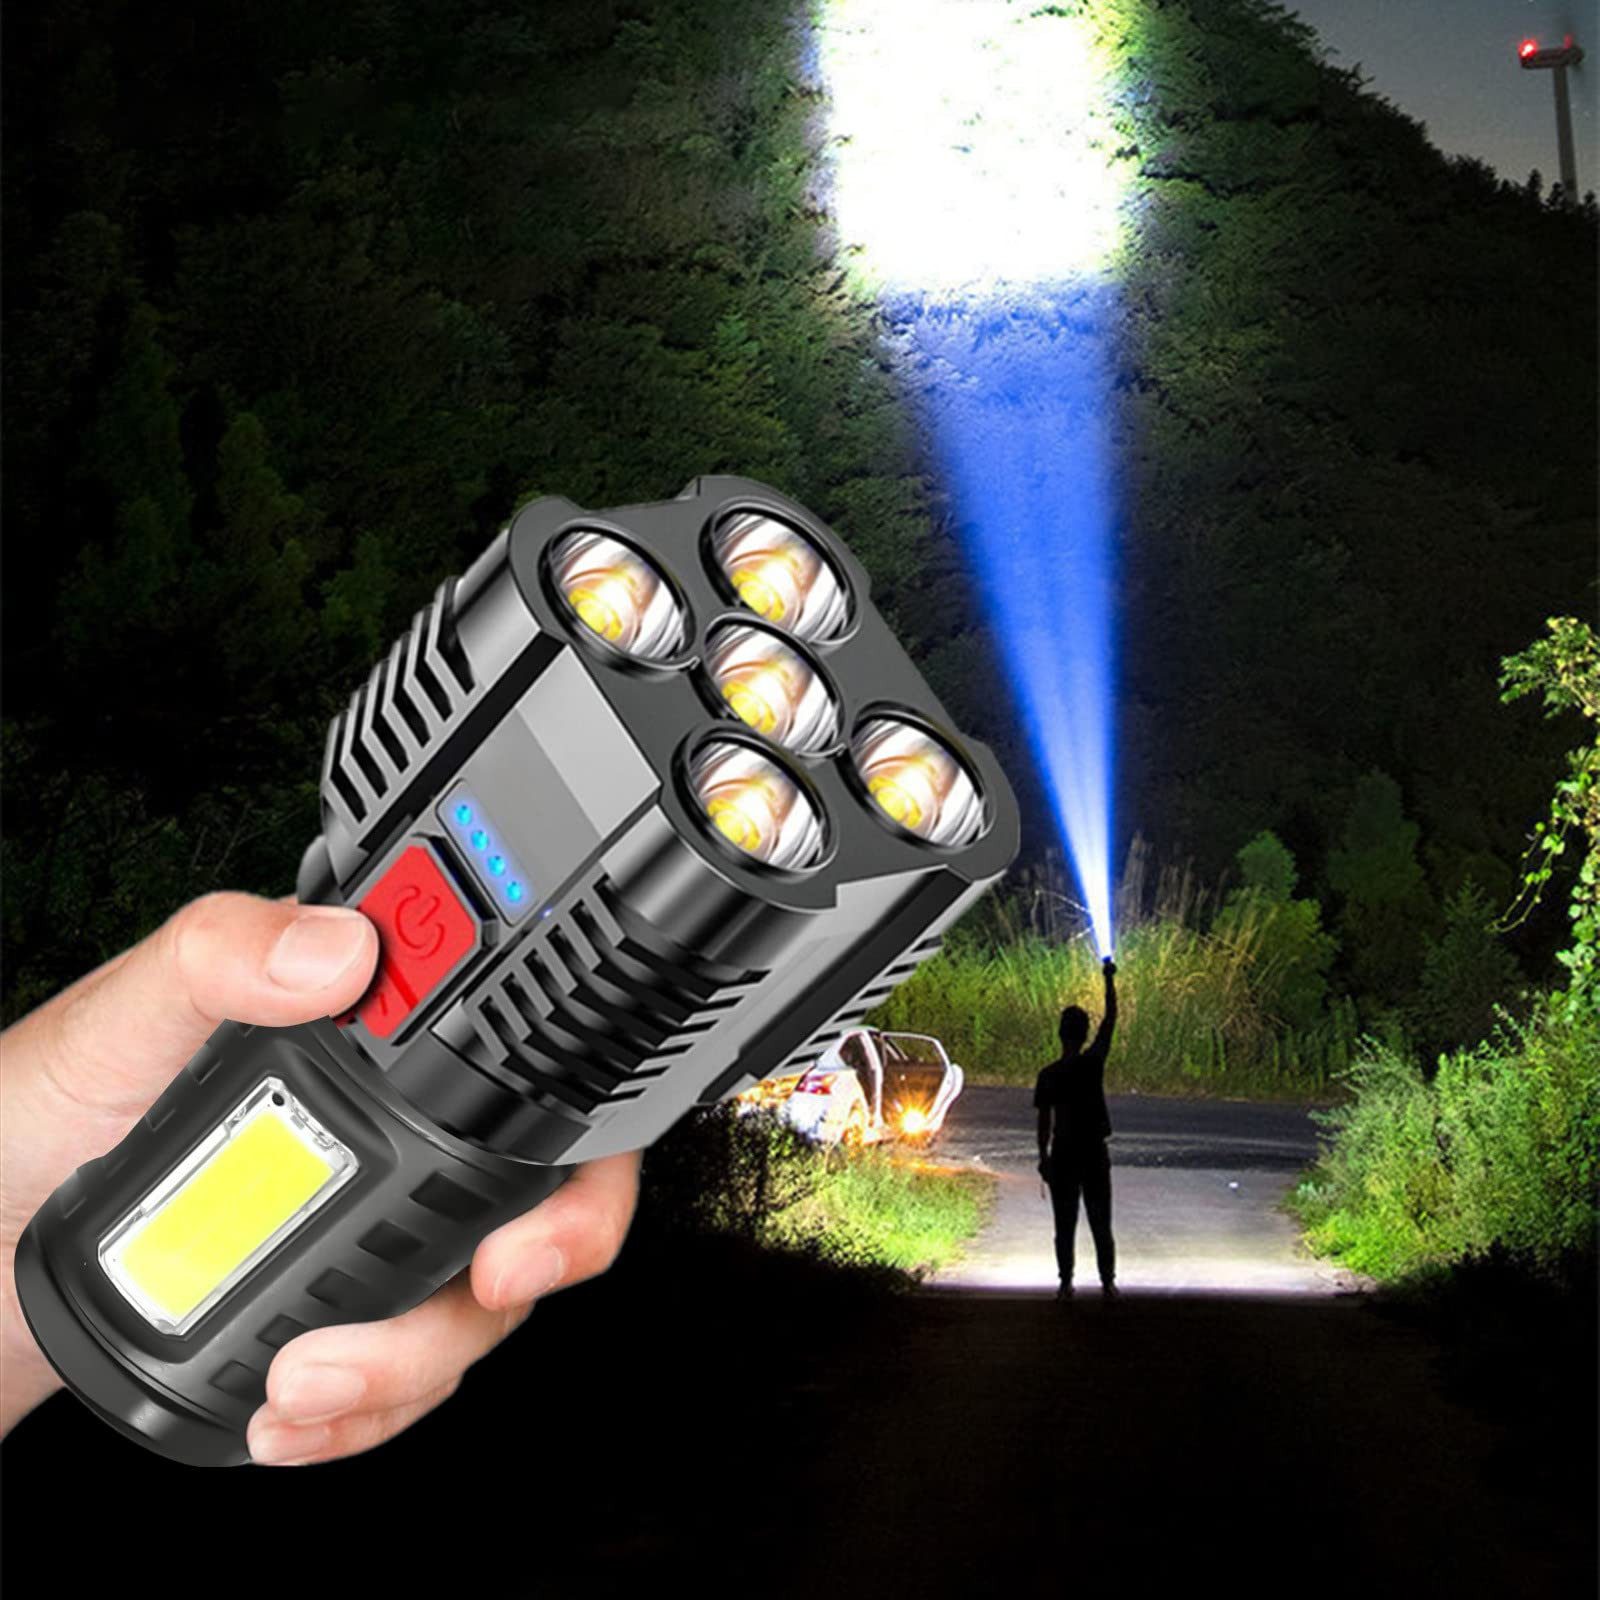 Avisto LED Taschenlampe USB Aufladbar Flashlight Handlampe Handheld Taktische Taschenlampe (5 LED Lamps Superhell, mit COB-Seitenlicht 4 Beleuchtungsmodi), für Camping, Outdoor, Notfall, Wandern, Zuhause